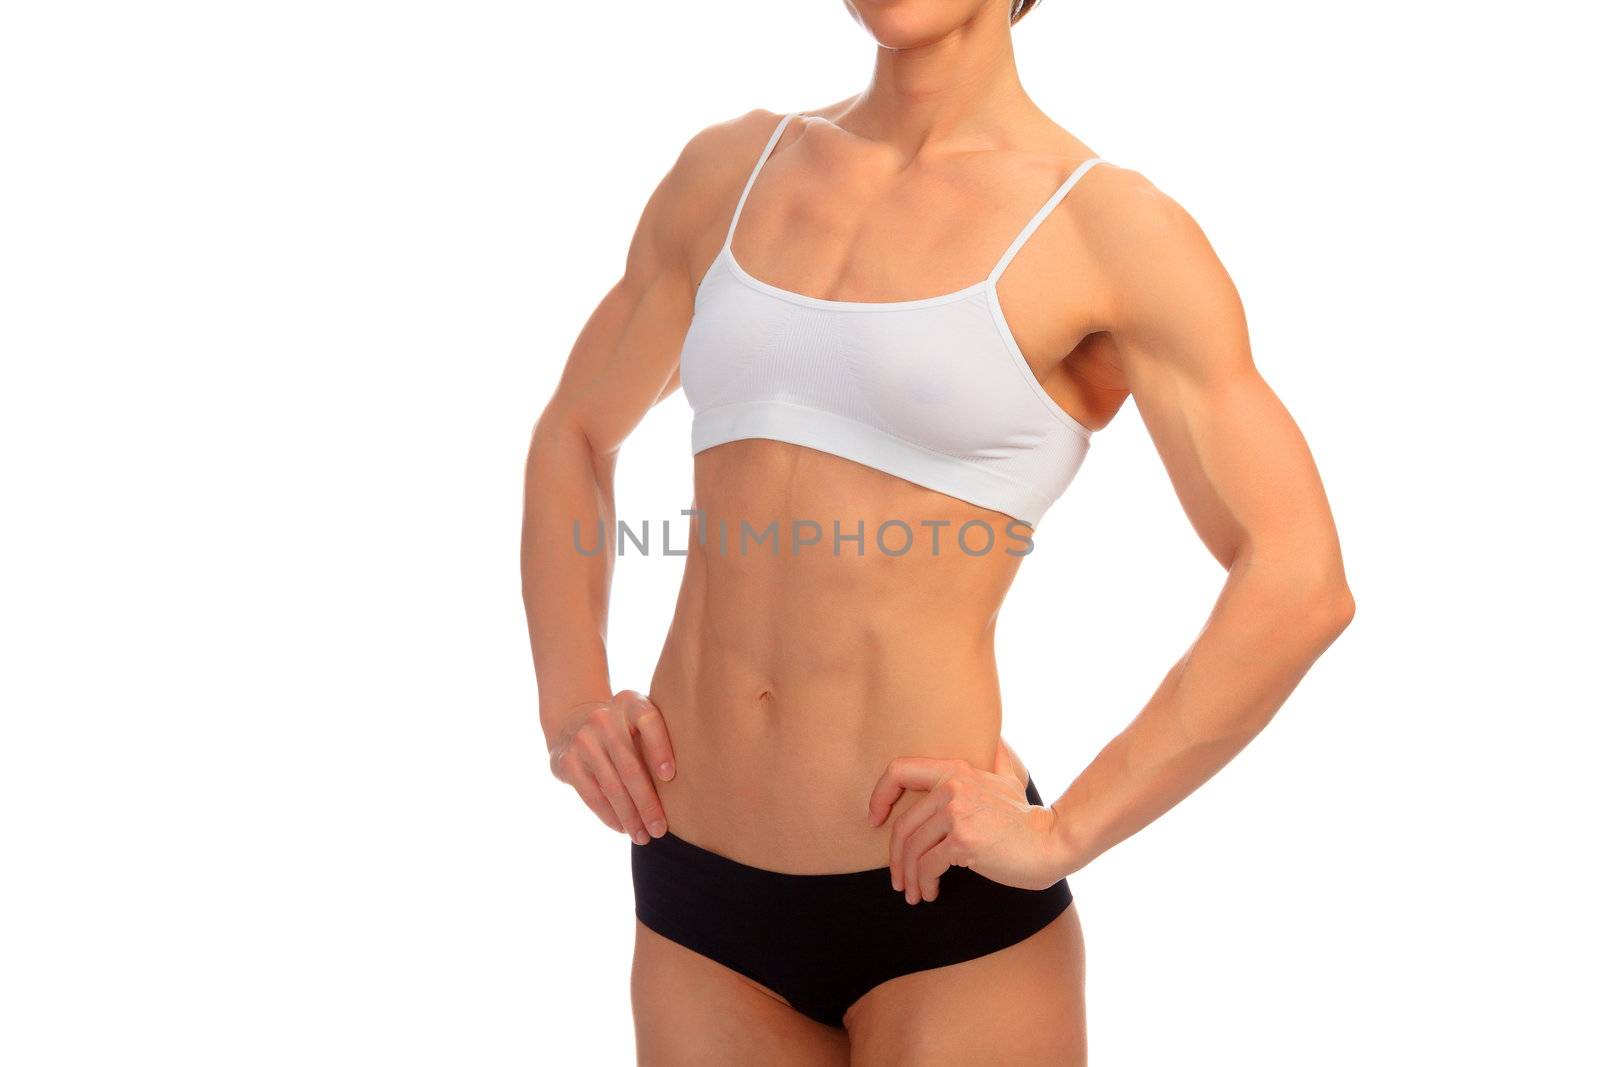 Tanned female bodybuilder posing against white background.